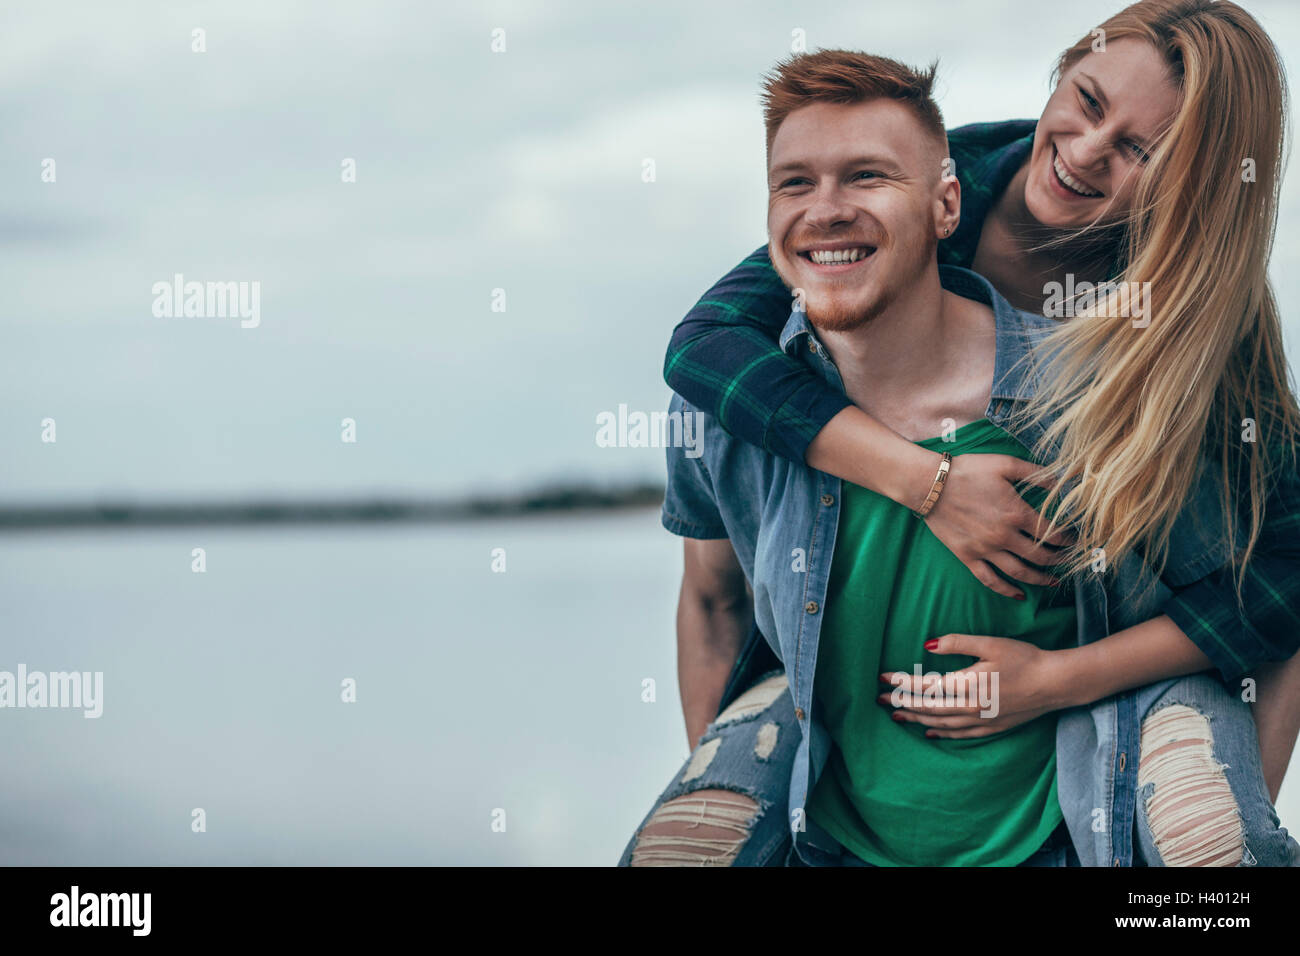 Happy man piggybacking cheerful girlfriend on lakeshore against sky Stock Photo